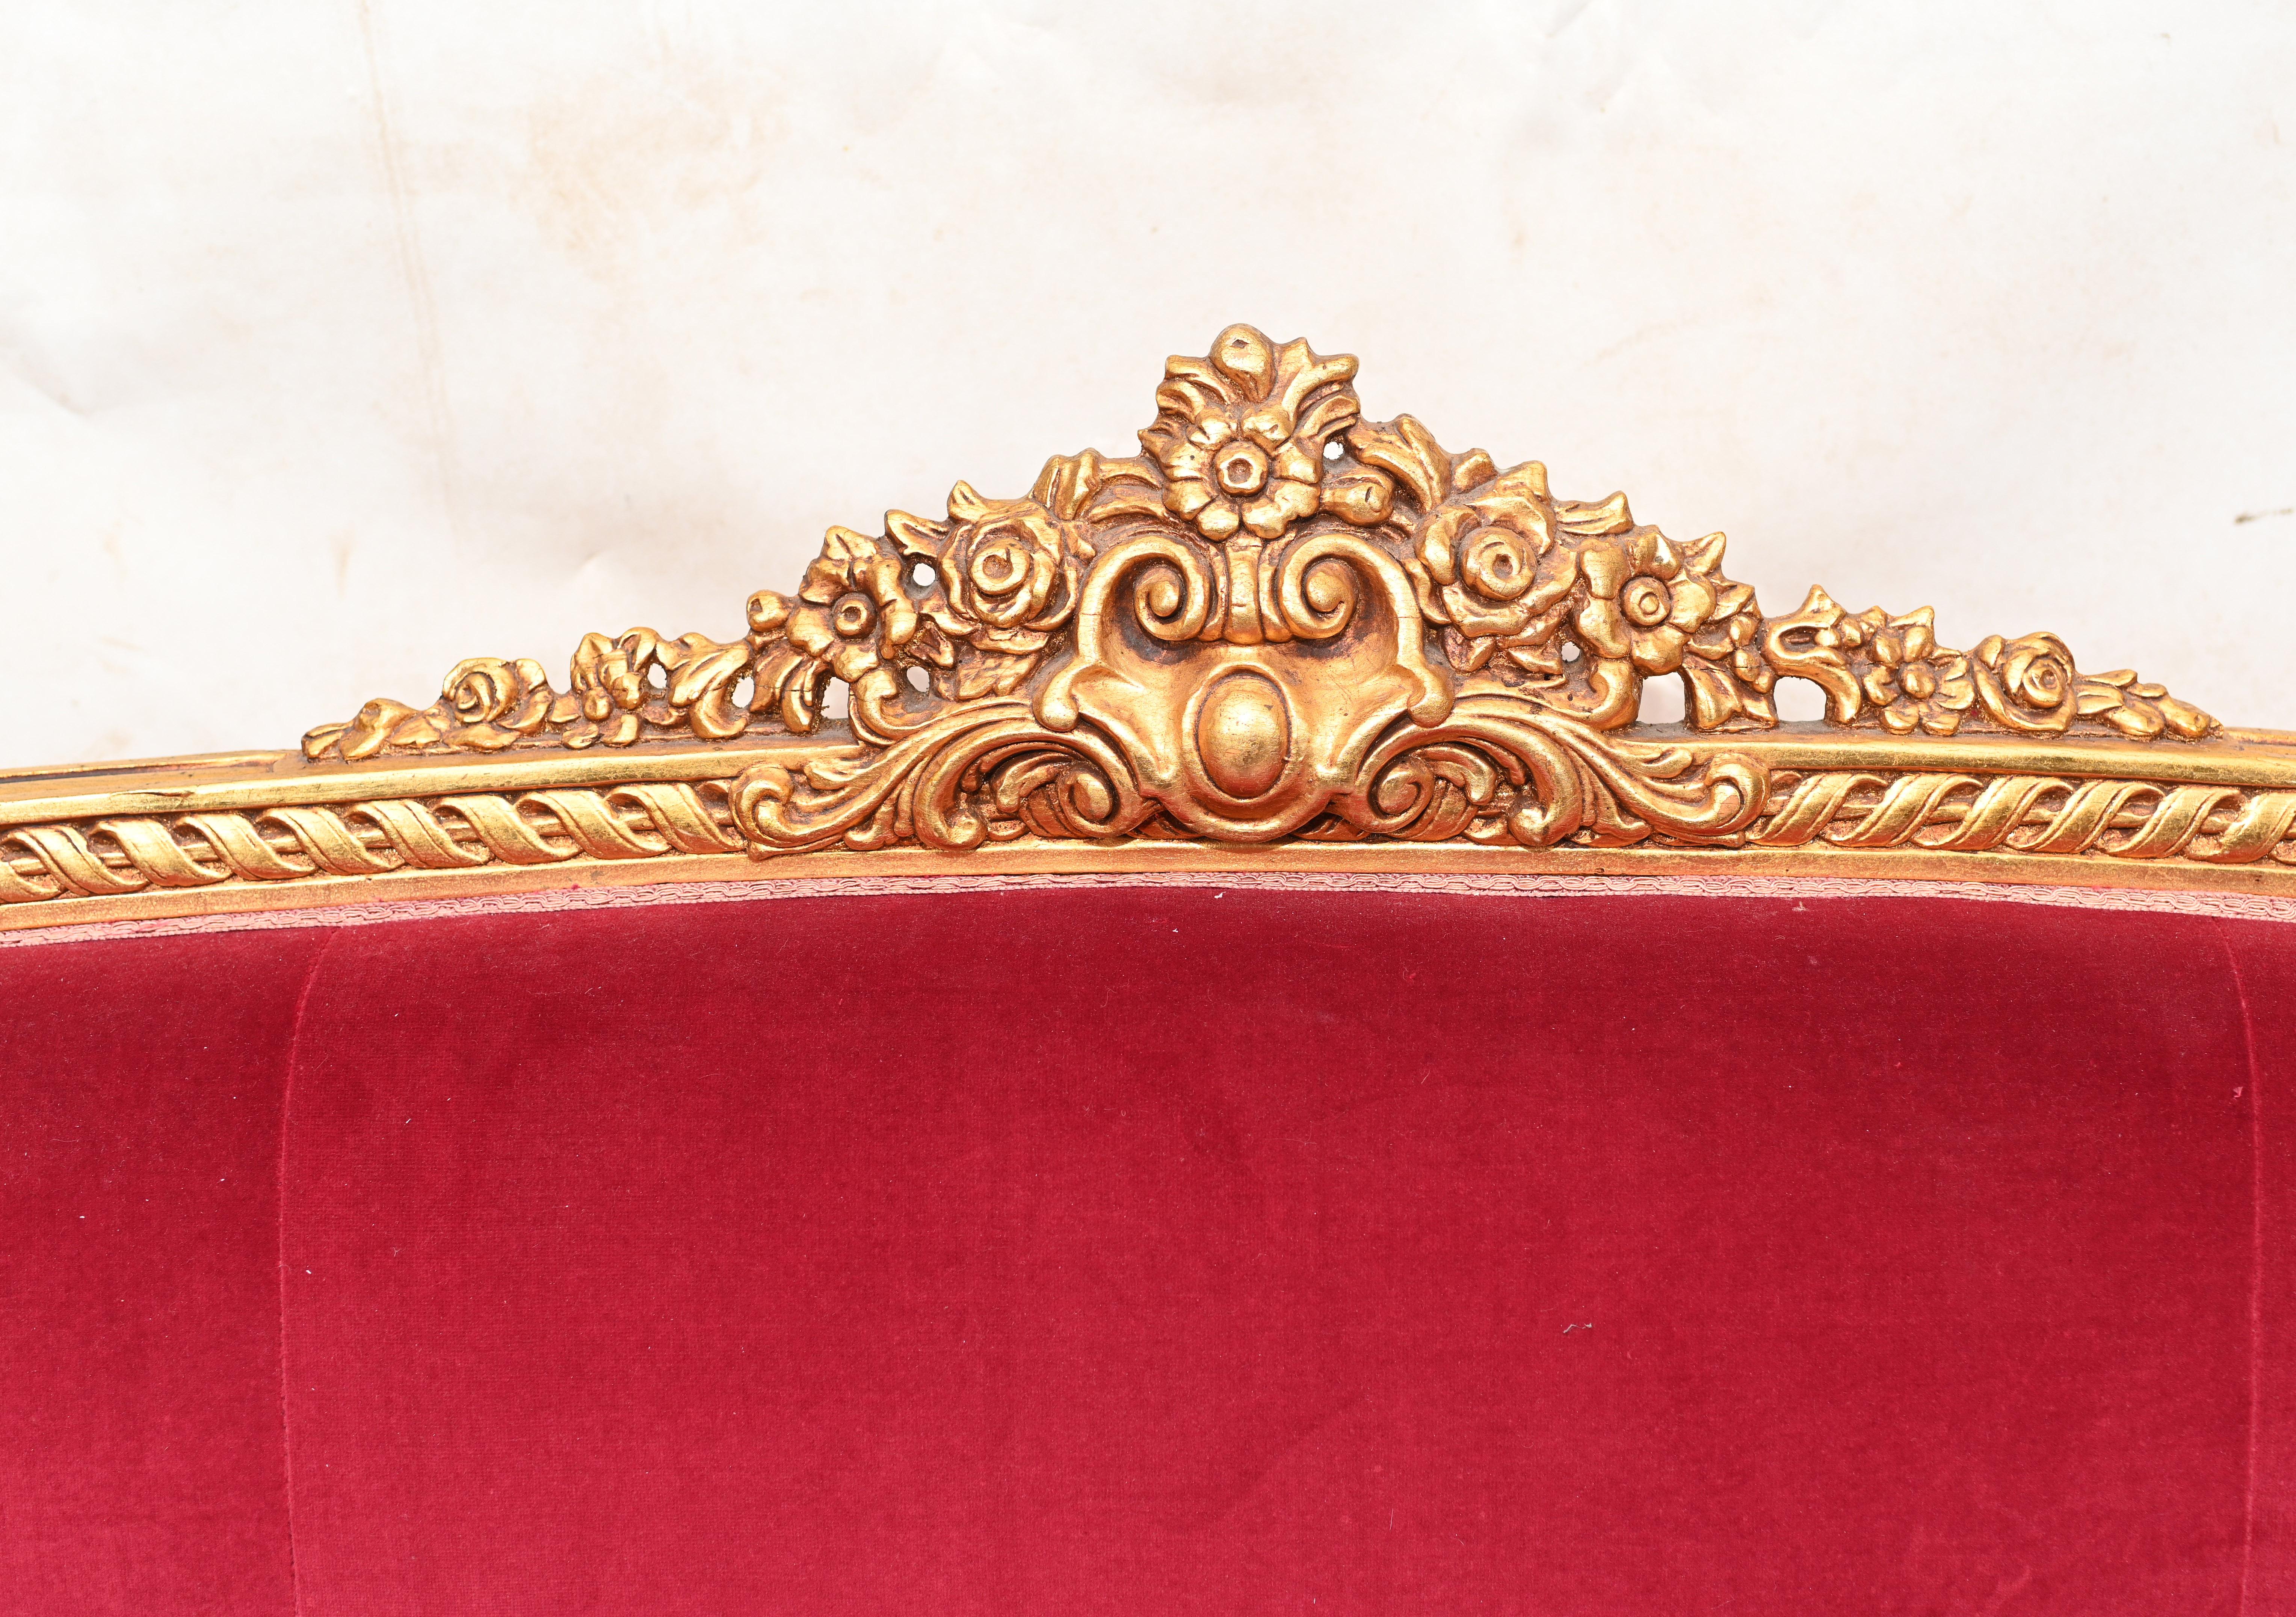 Wunderschönes vergoldetes Sofa oder Couch im französischen Empire-Stil
Aufwendig geschnitzter und vergoldeter Rahmen
Elegante Details wie Rosetten und Arabesken
Wir datieren dies auf ca. 1930
Großartiges Stück für die Inneneinrichtung
Gekauft bei